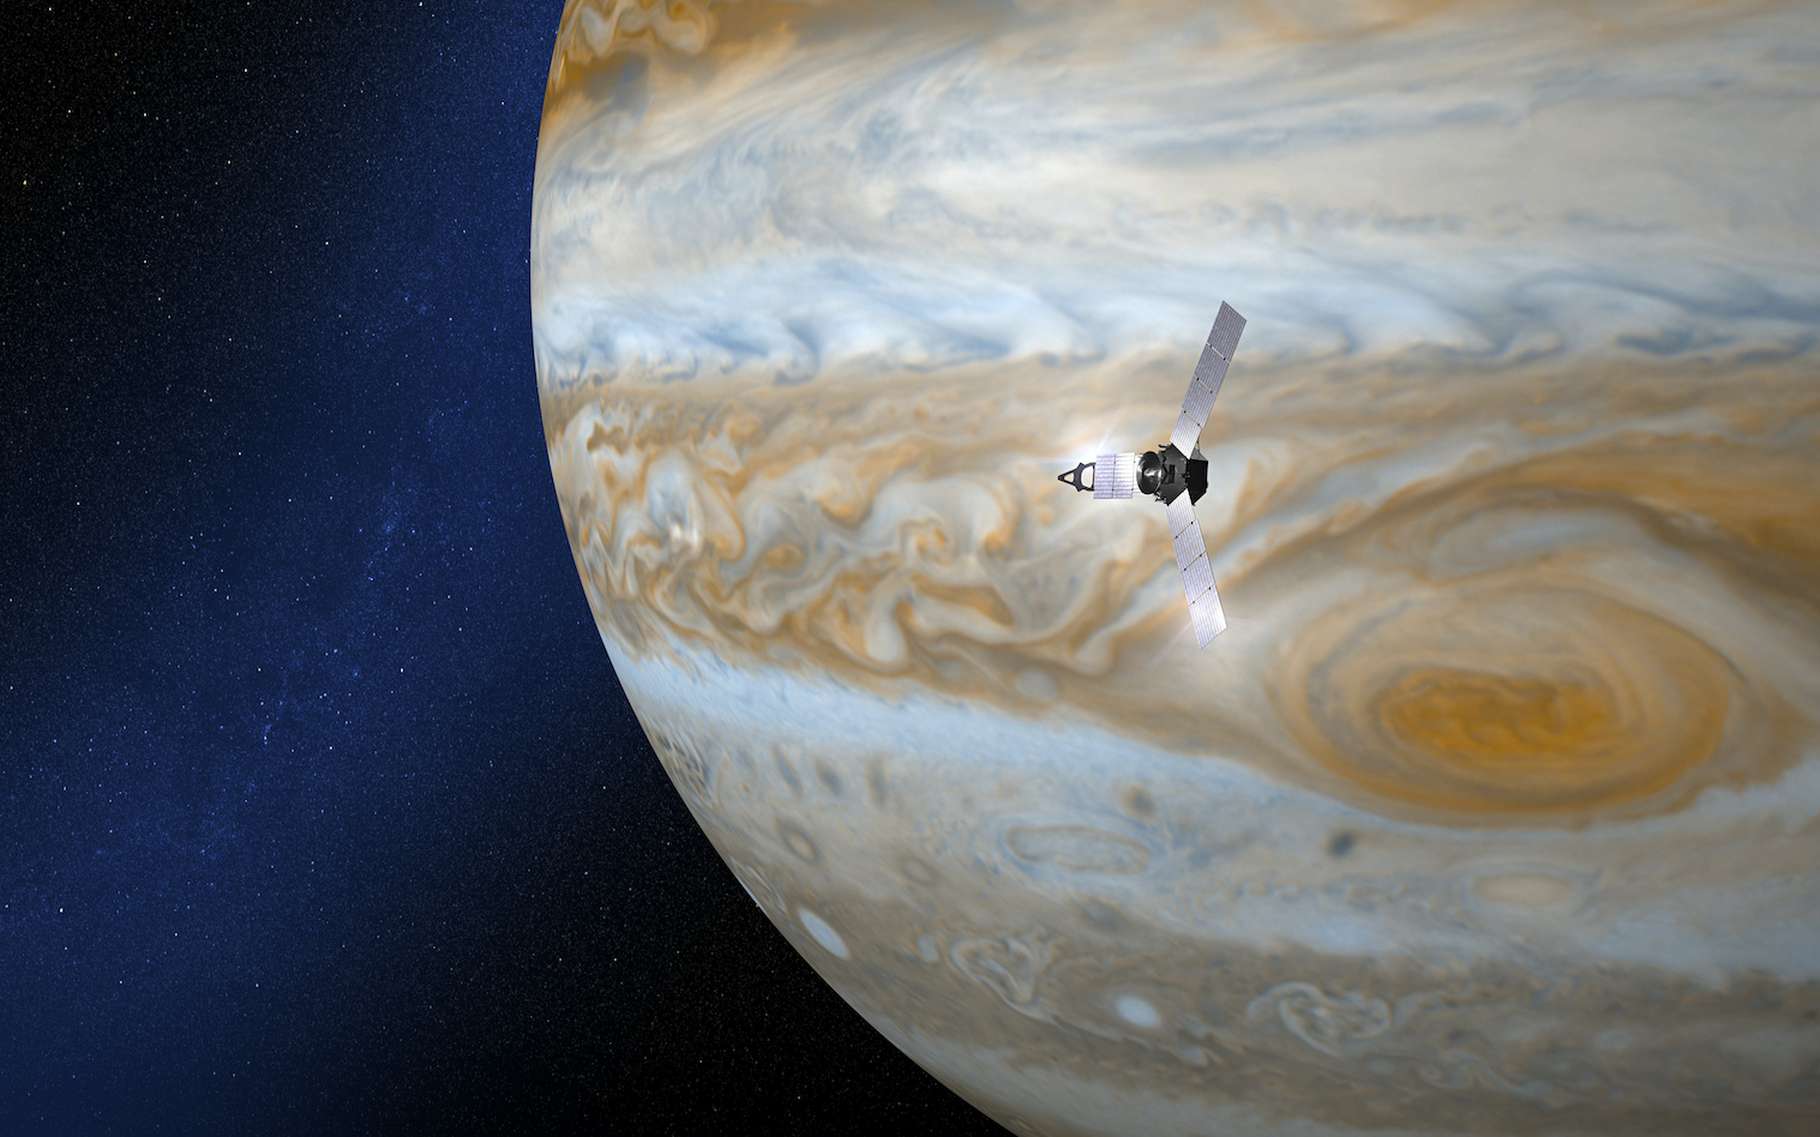 Les chercheurs continuent d’exploiter les images de Jupiter renvoyées par la sonde Juno. Des images parfois très semblables à celles que l’on pourrait prendre sur Terre. © Naeblys, Adobe Stock